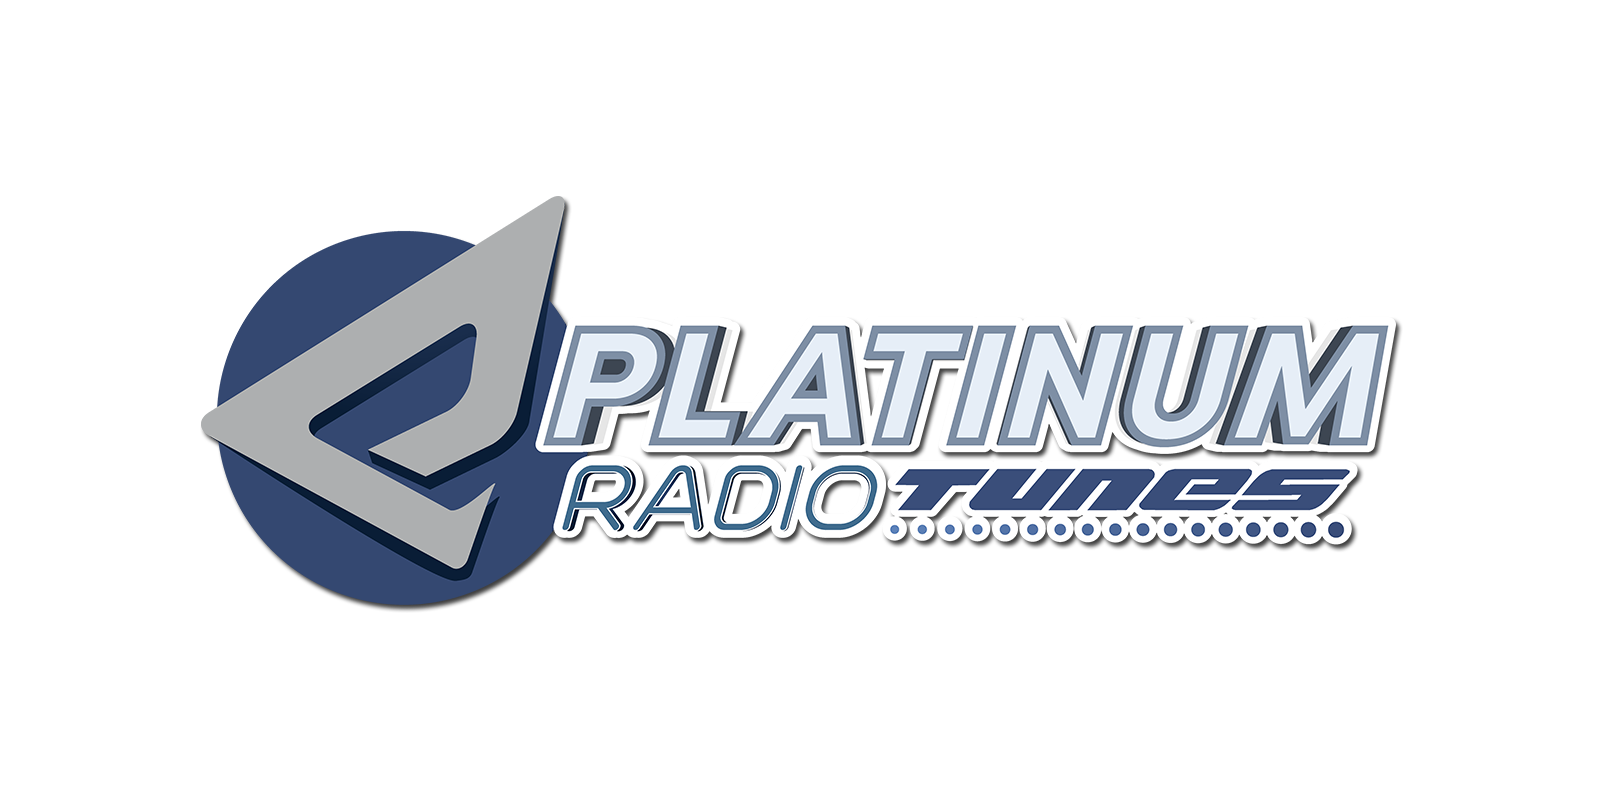 PLATINUM radiotunes logo 2 transparent